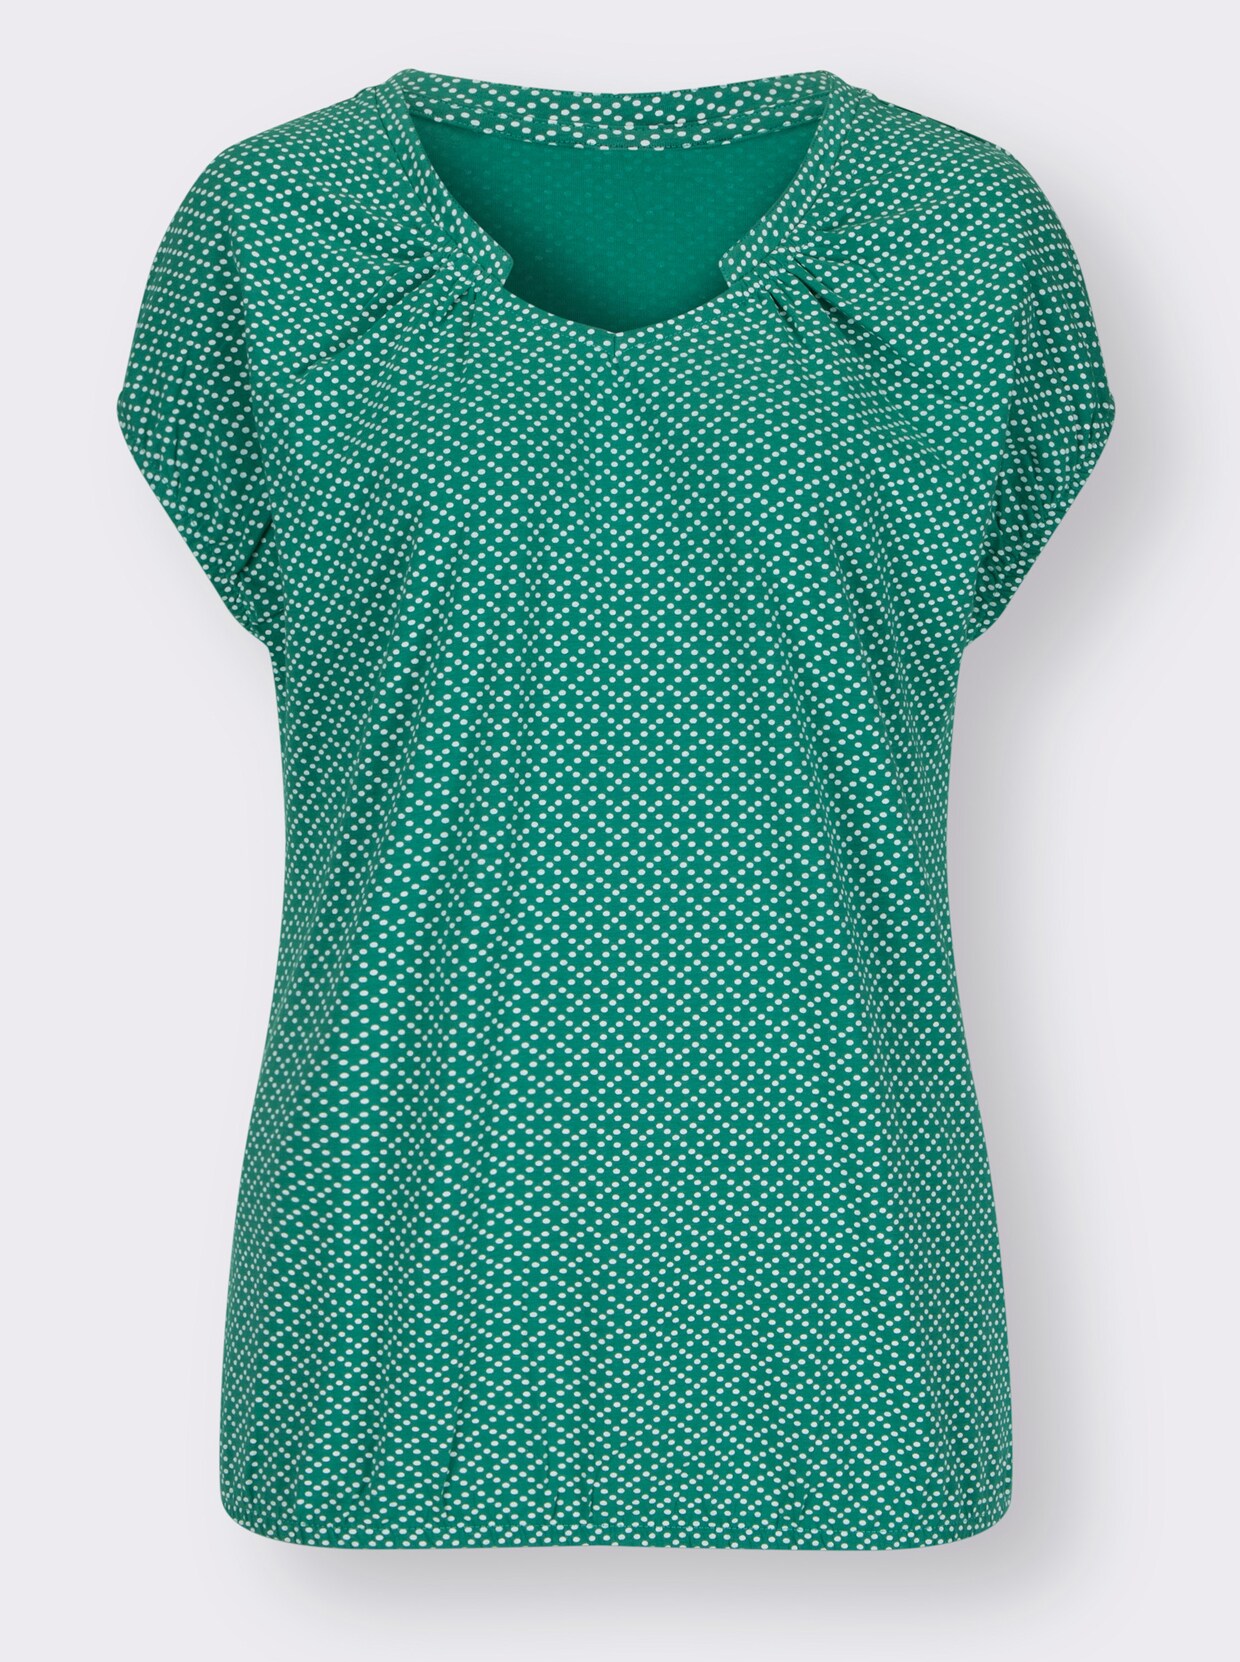 Tričko s krátkým rukávem - smaragdová-bílá-potisk